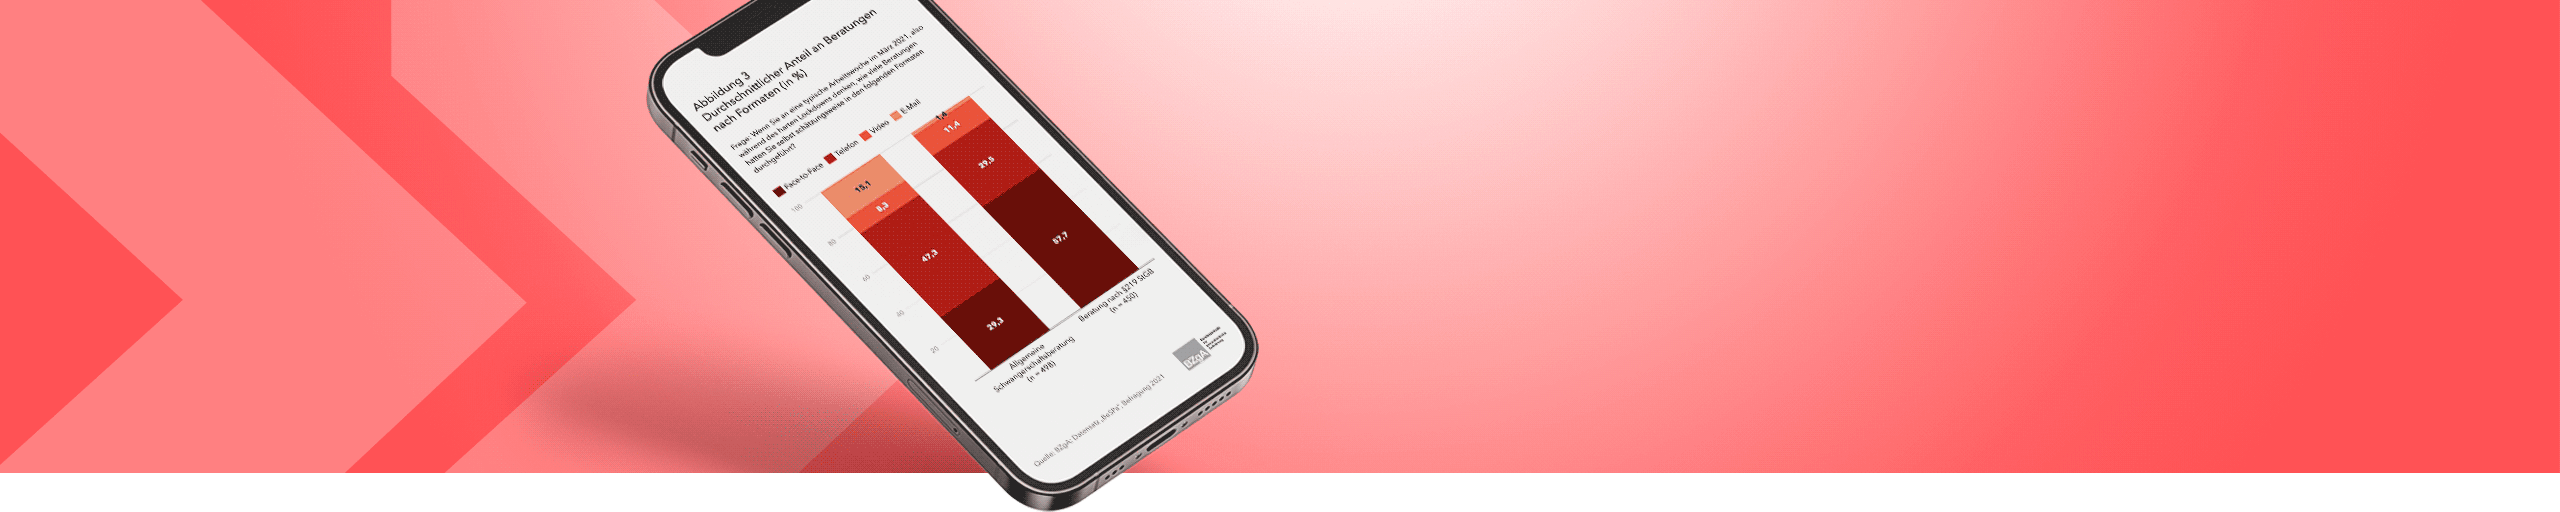 Handy auf rotem Hintergrund zeigt ein gestapeltes Balkendiagramm